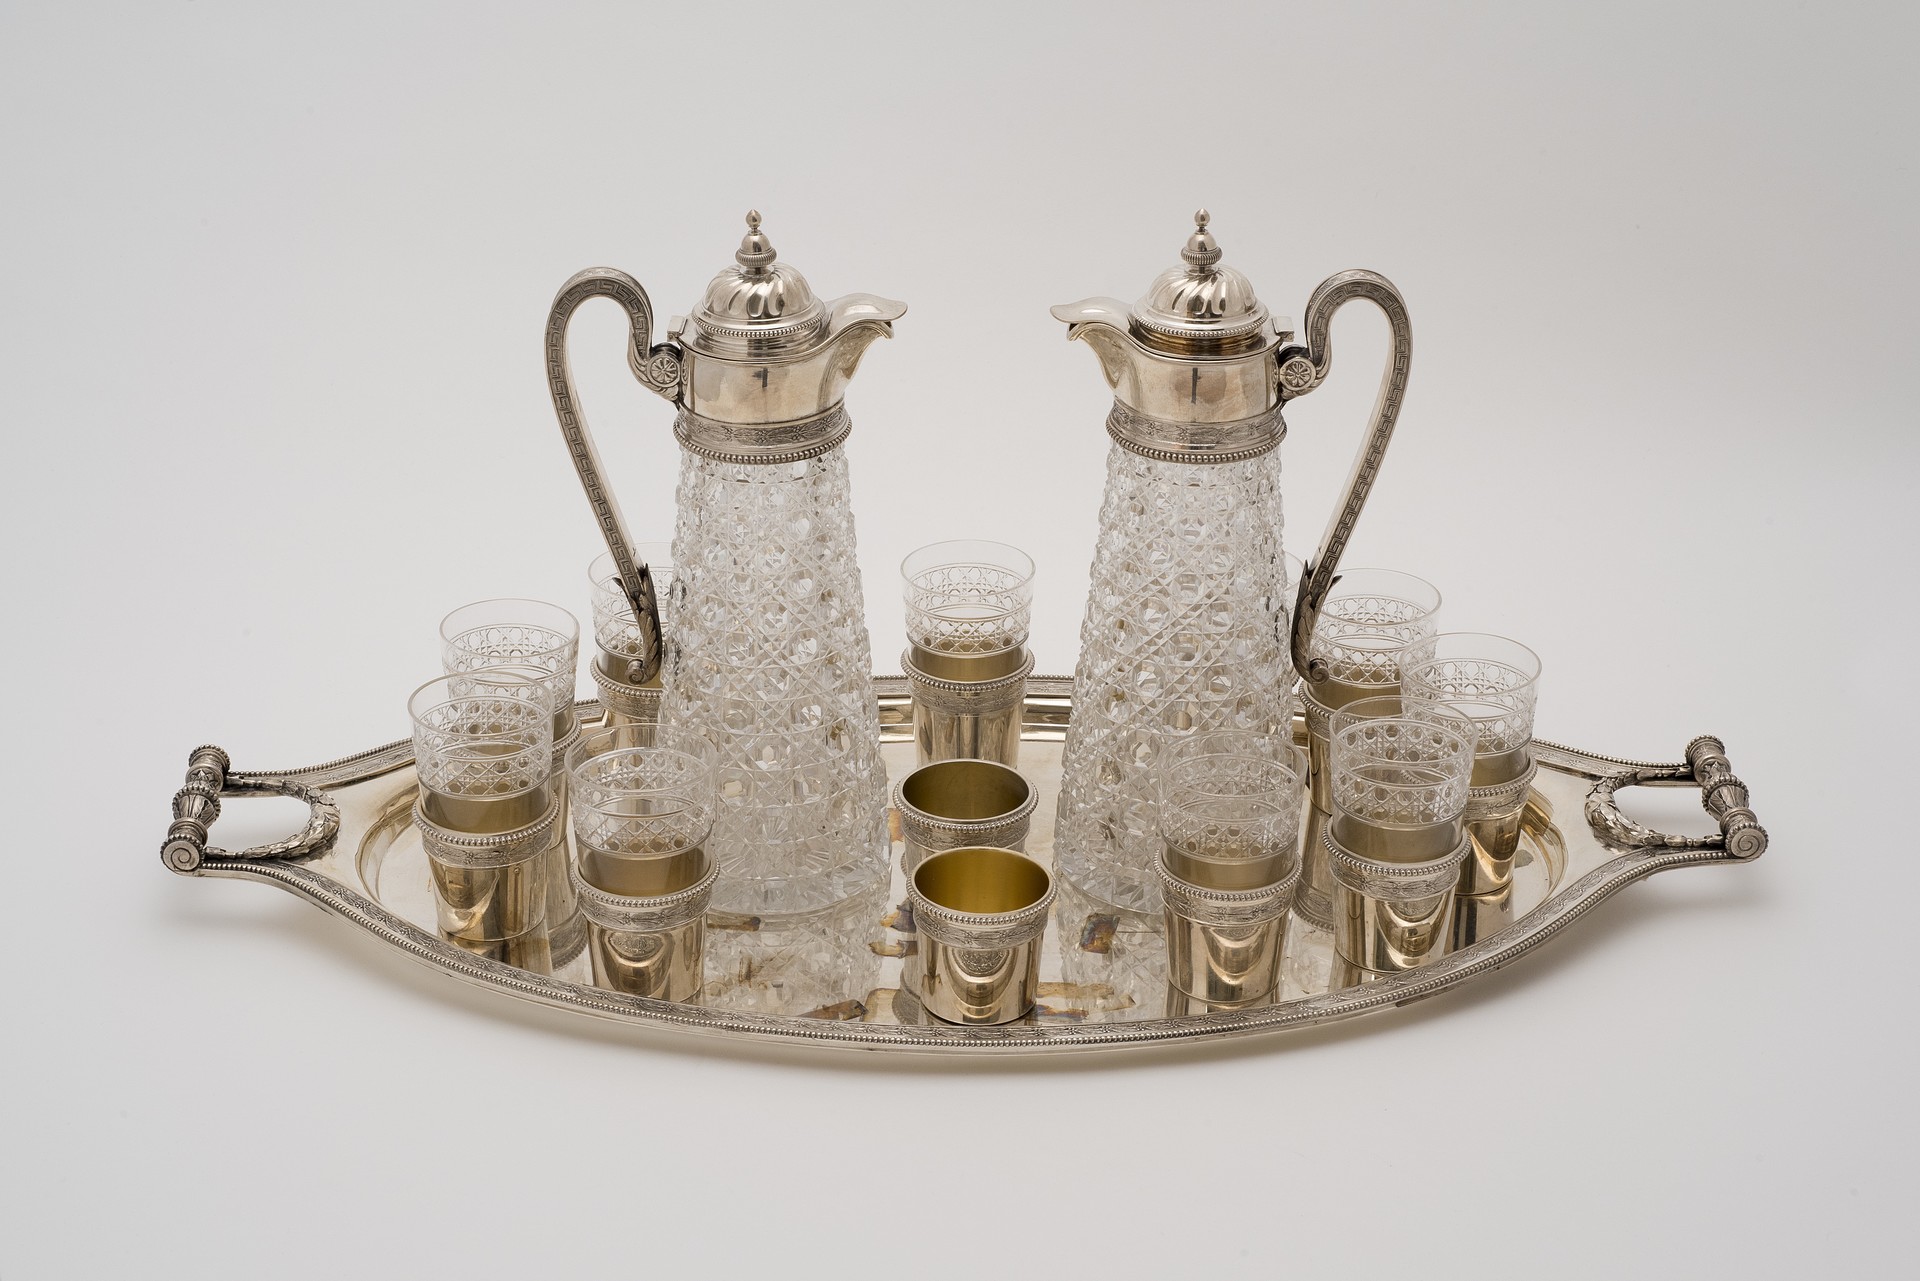 Servizio per la vodka composto da 25 pezzi in argento e cristallo, Mosca, 1895. Museo Fabergé, Baden-Baden